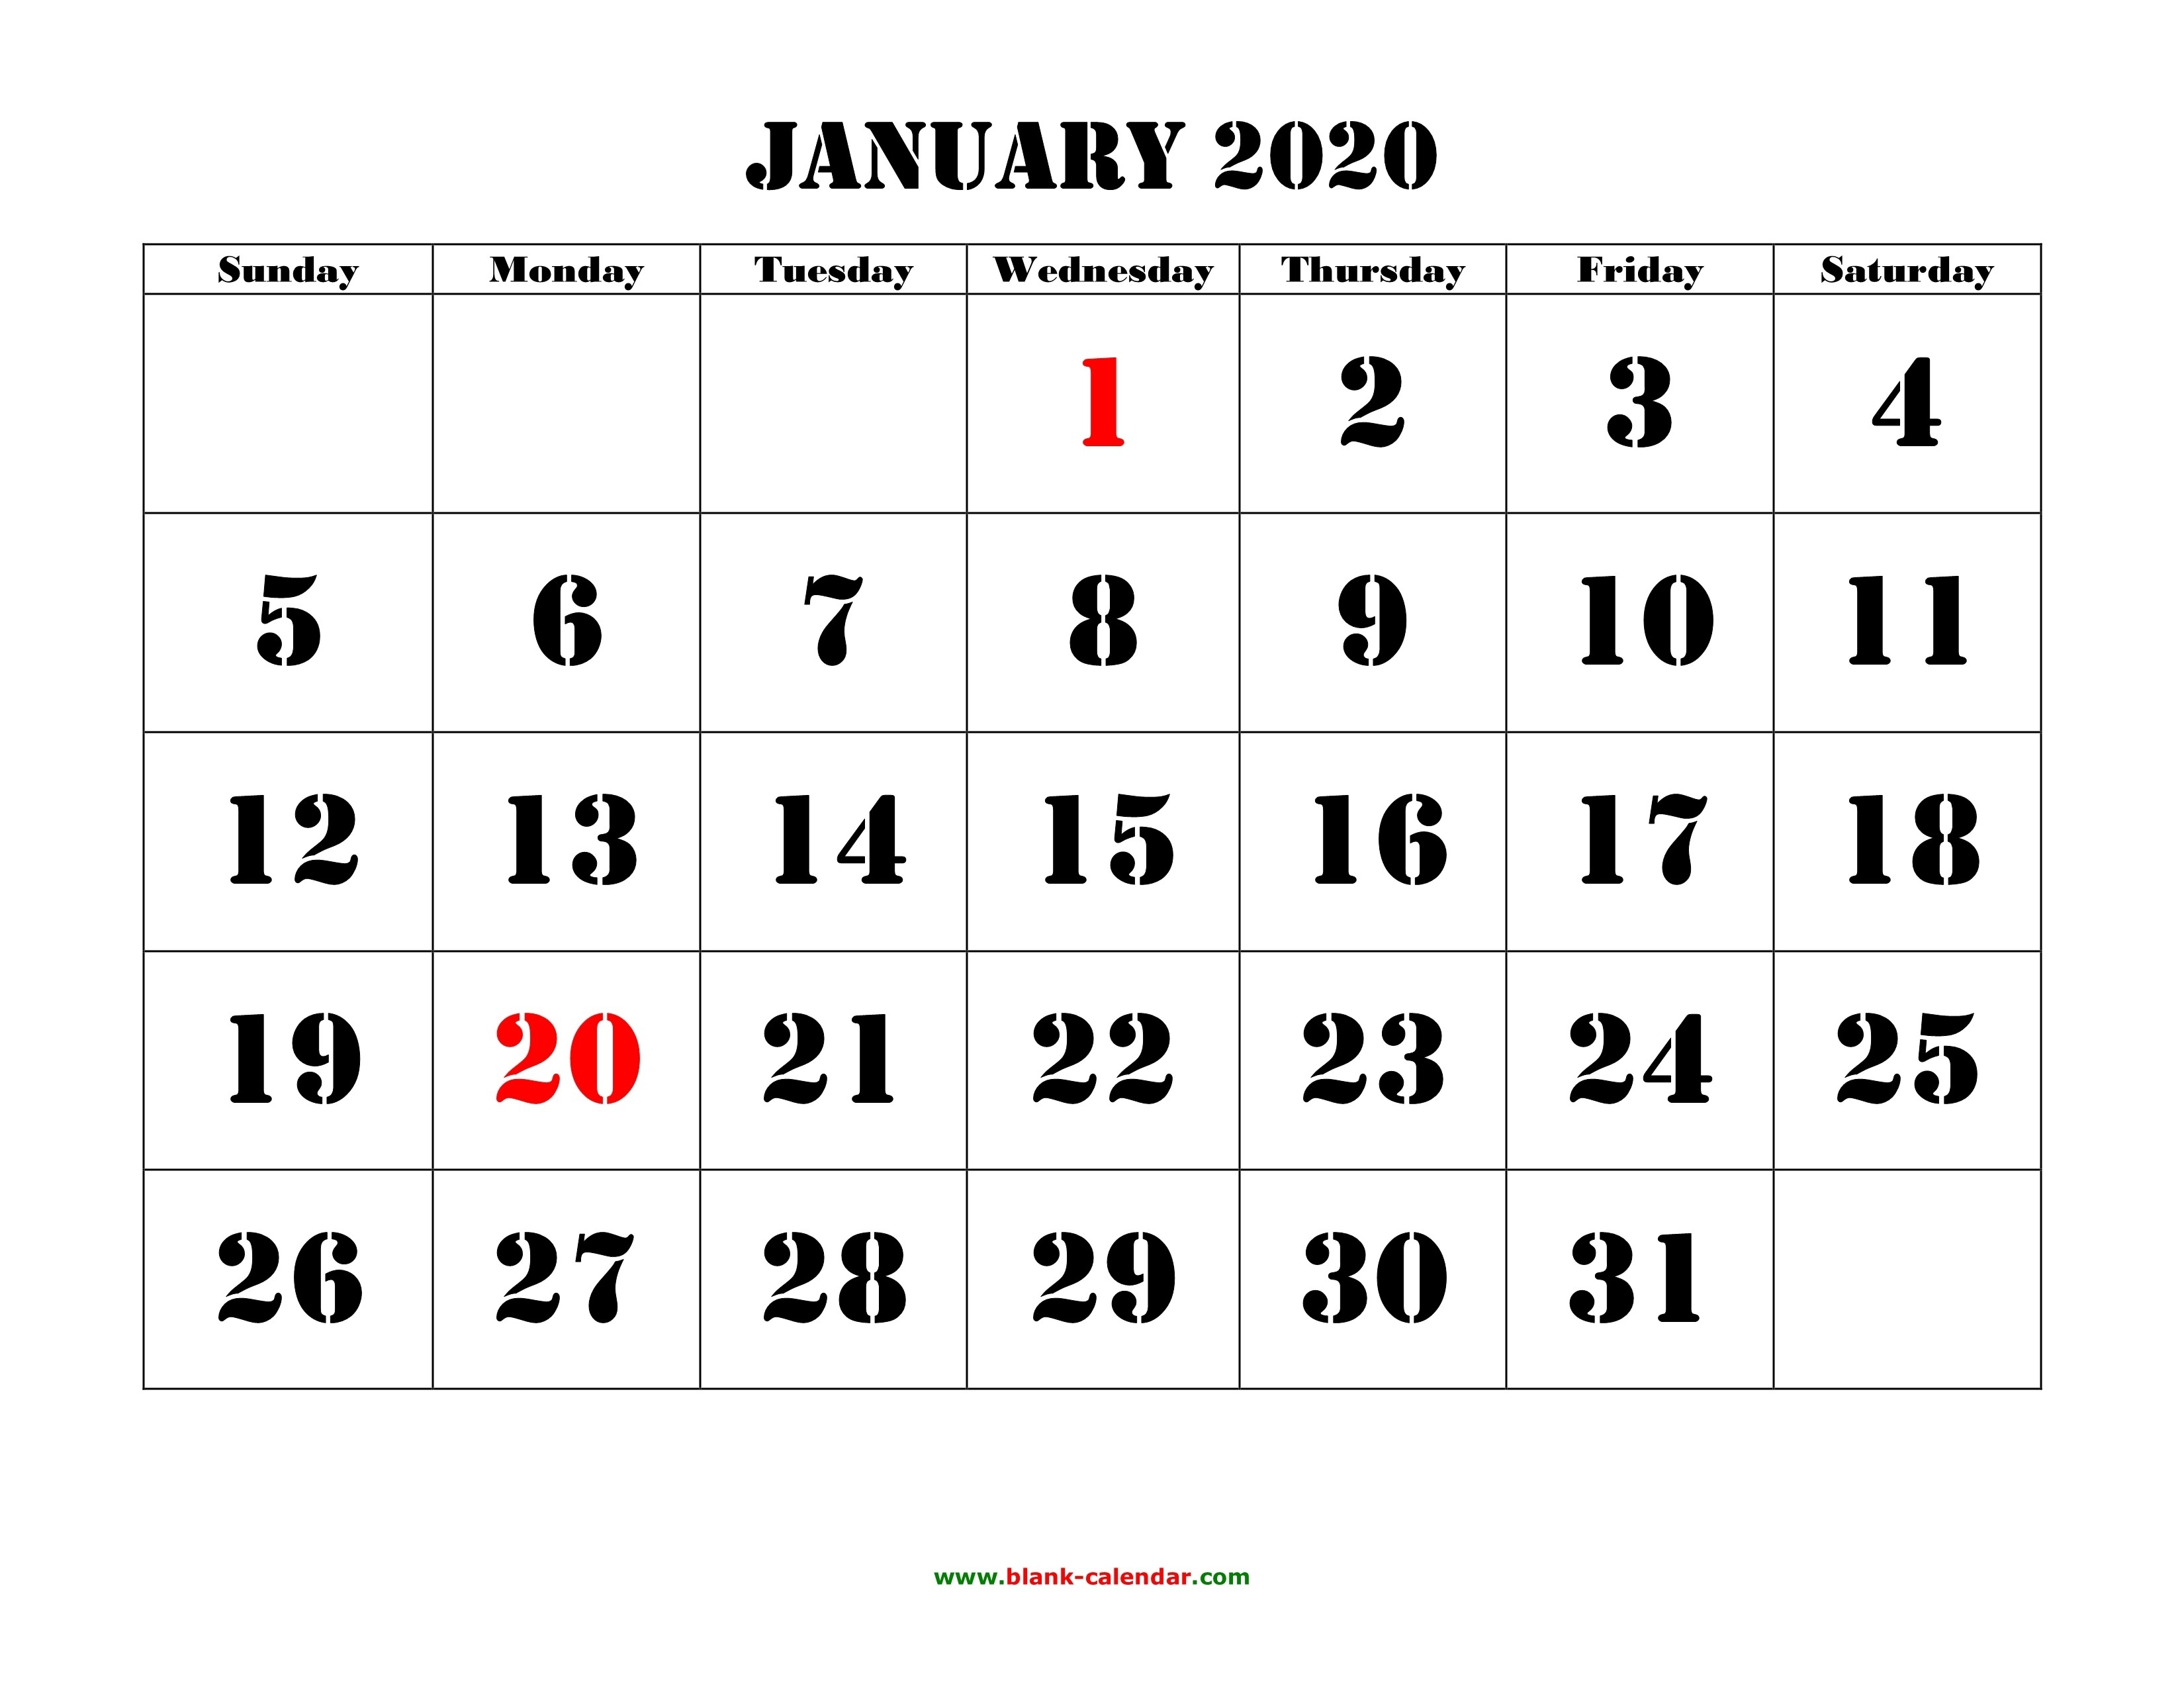 Free January 2020 Printable Calendar - Create Your Editable-January 2020 Calendar Hindu